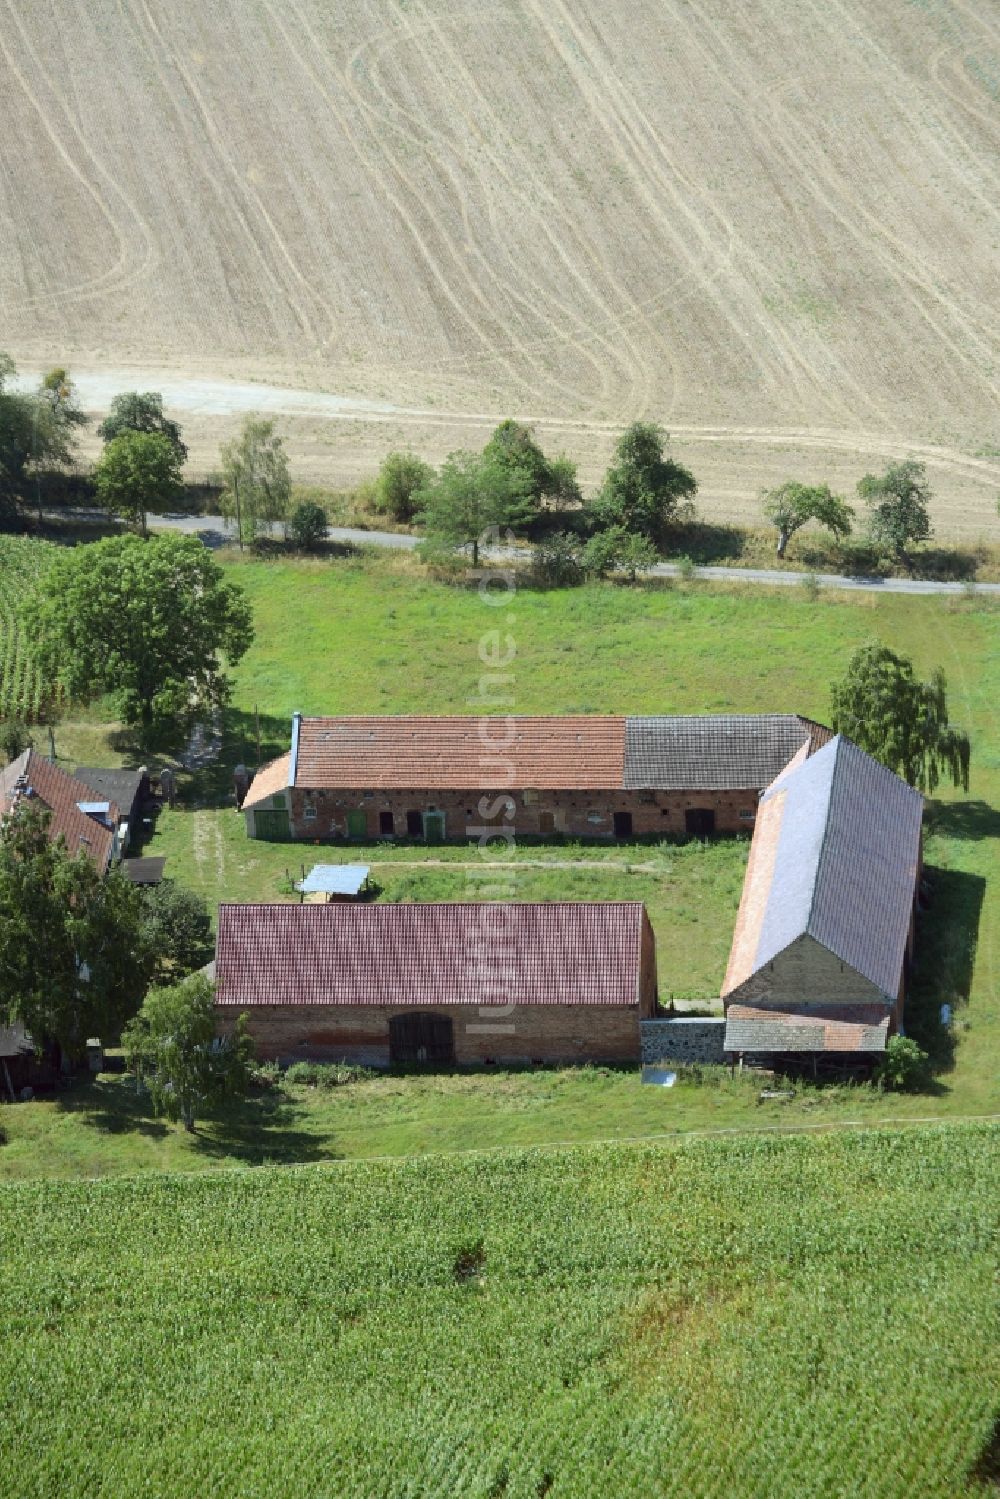 Vierlinden von oben - Gehöft eines Bauernhofes am Rand von bestellten Feldern in Vierlinden im Bundesland Brandenburg